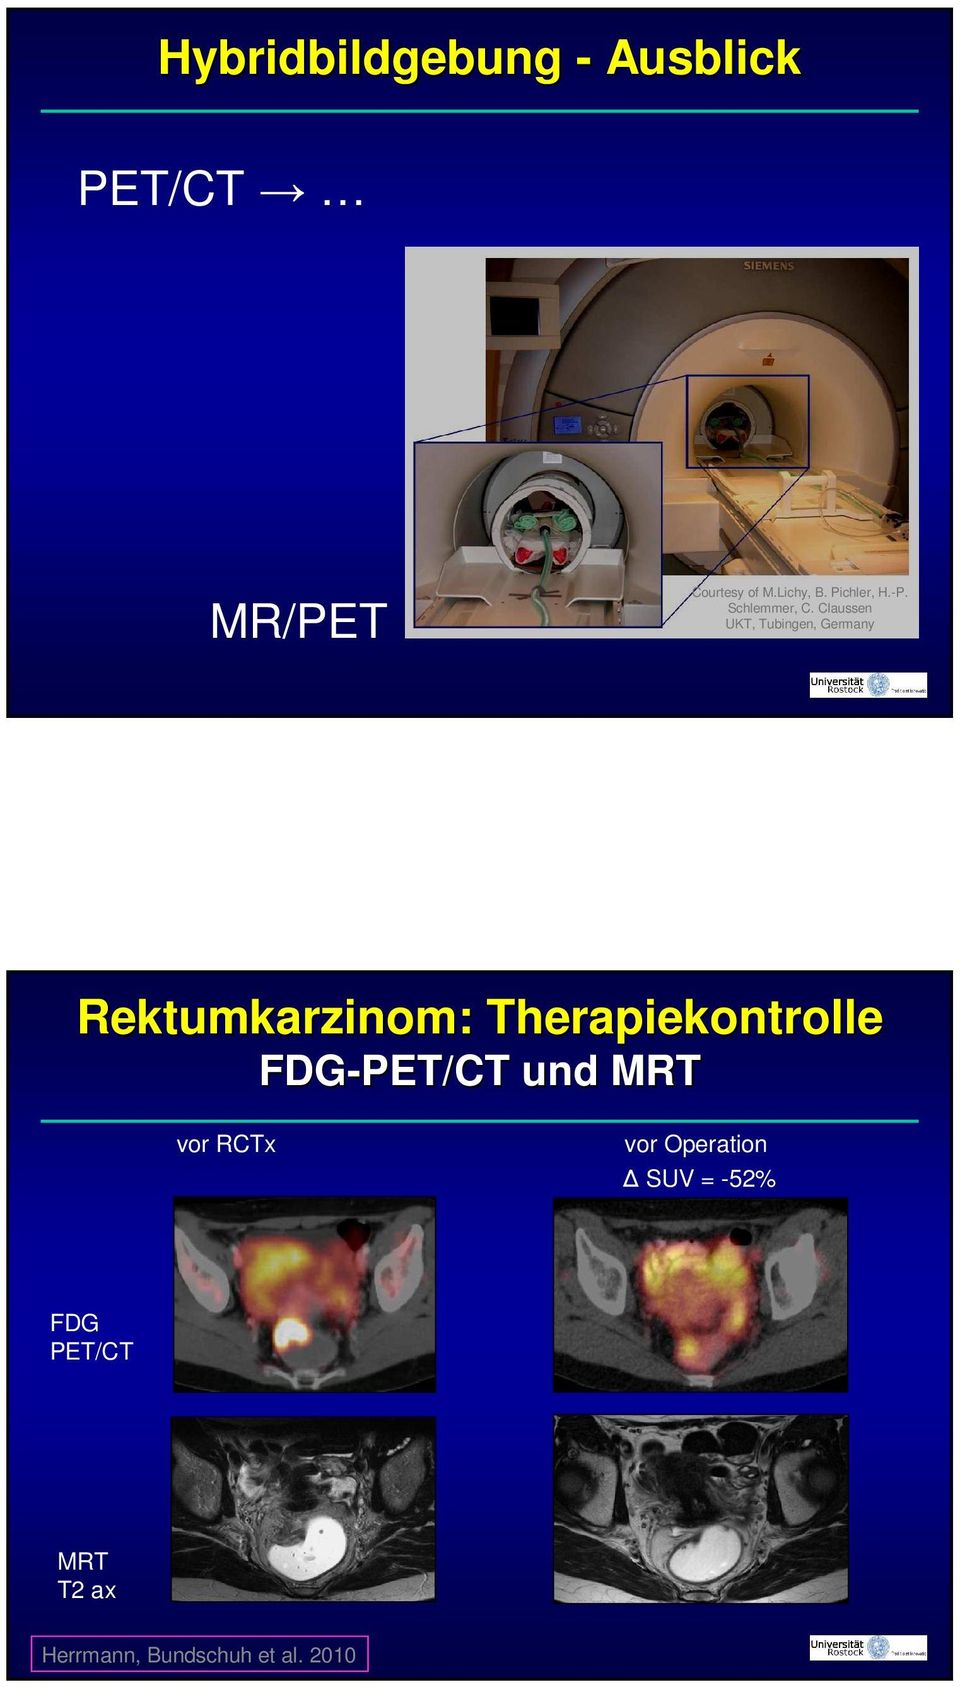 Claussen UKT, Tubingen, Germany Rektumkarzinom: Therapiekontrolle